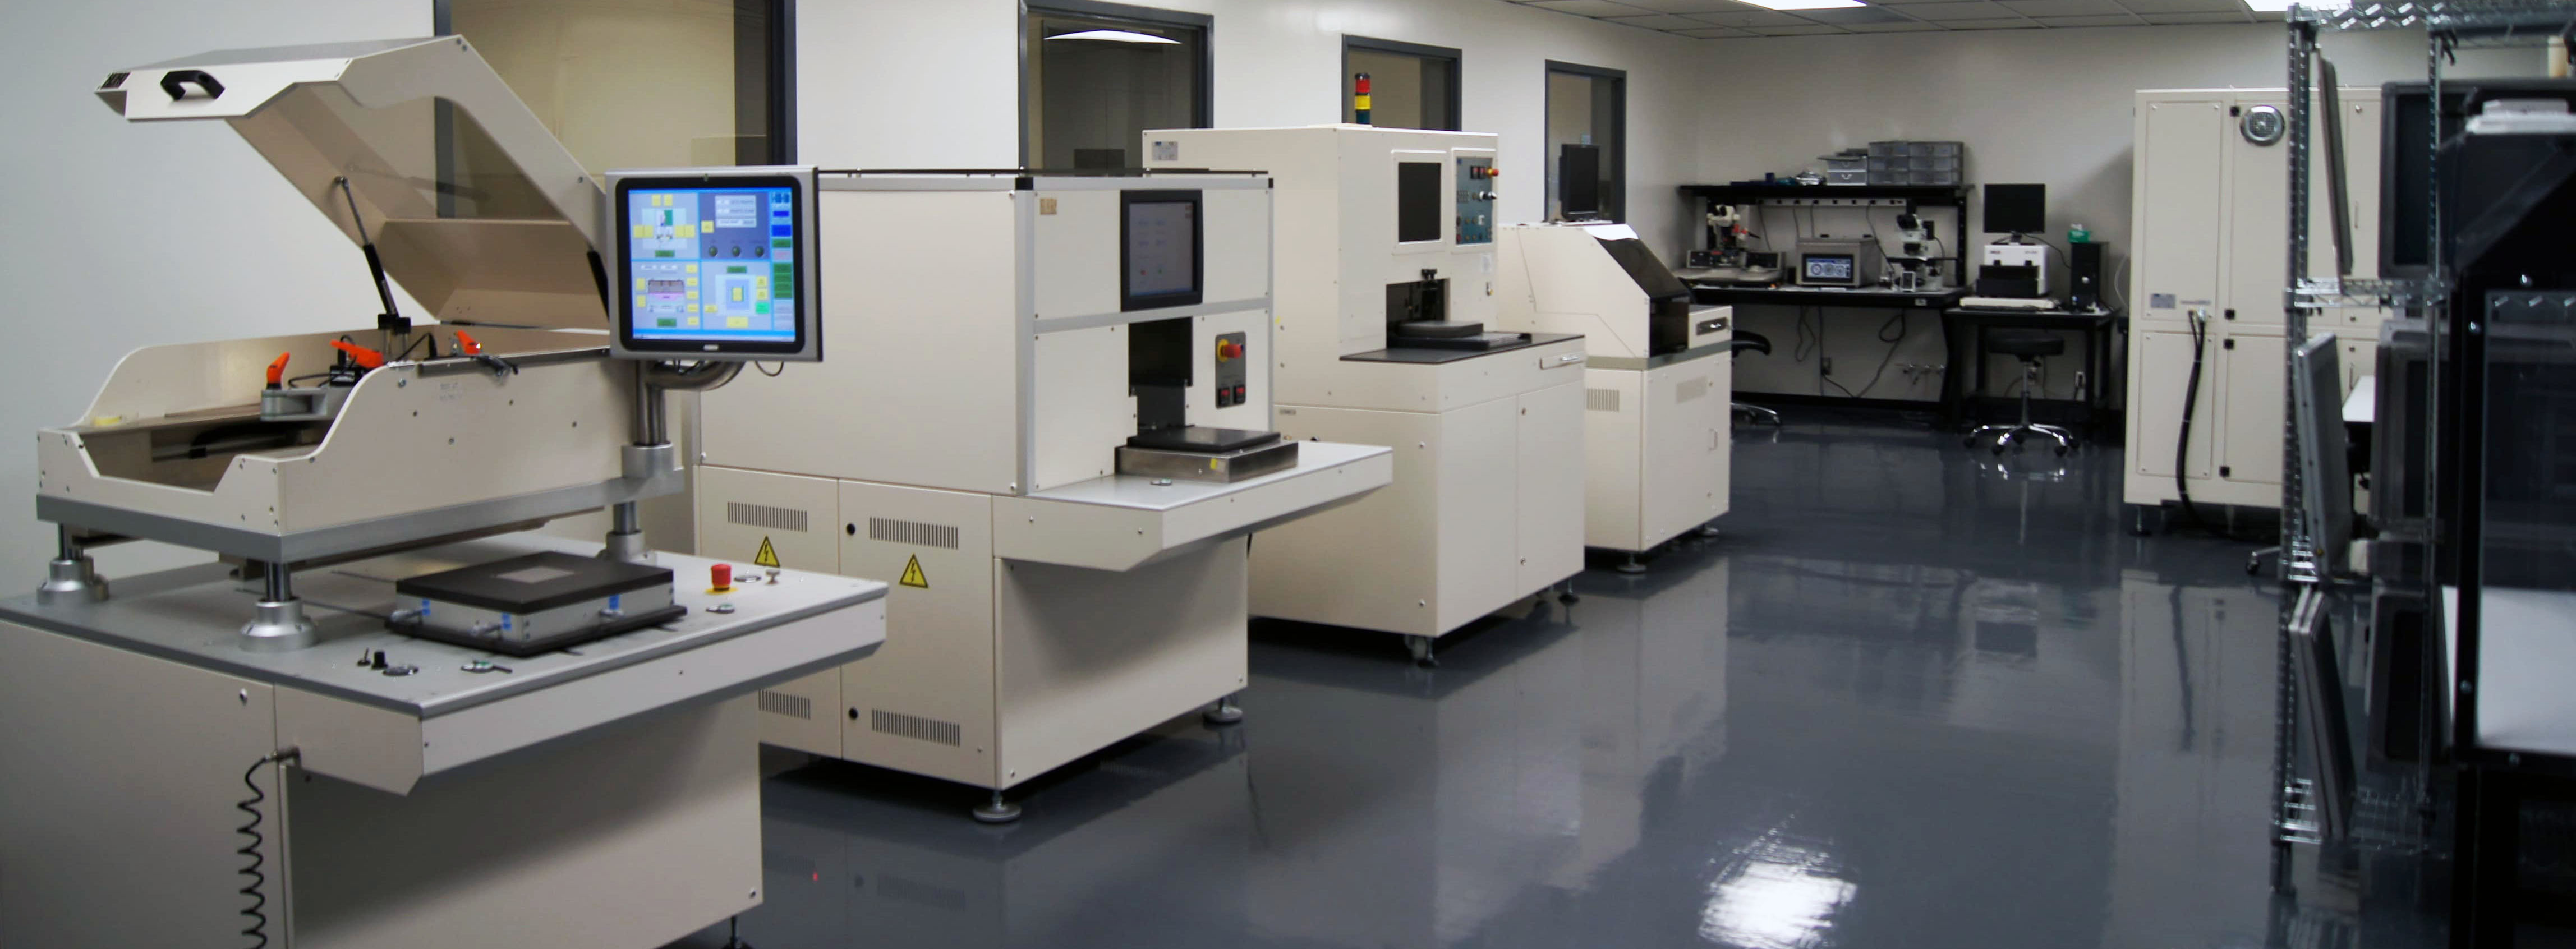 Laboratoire moderne avec équipements high-tech pour la recherche et l'innovation en technologie.